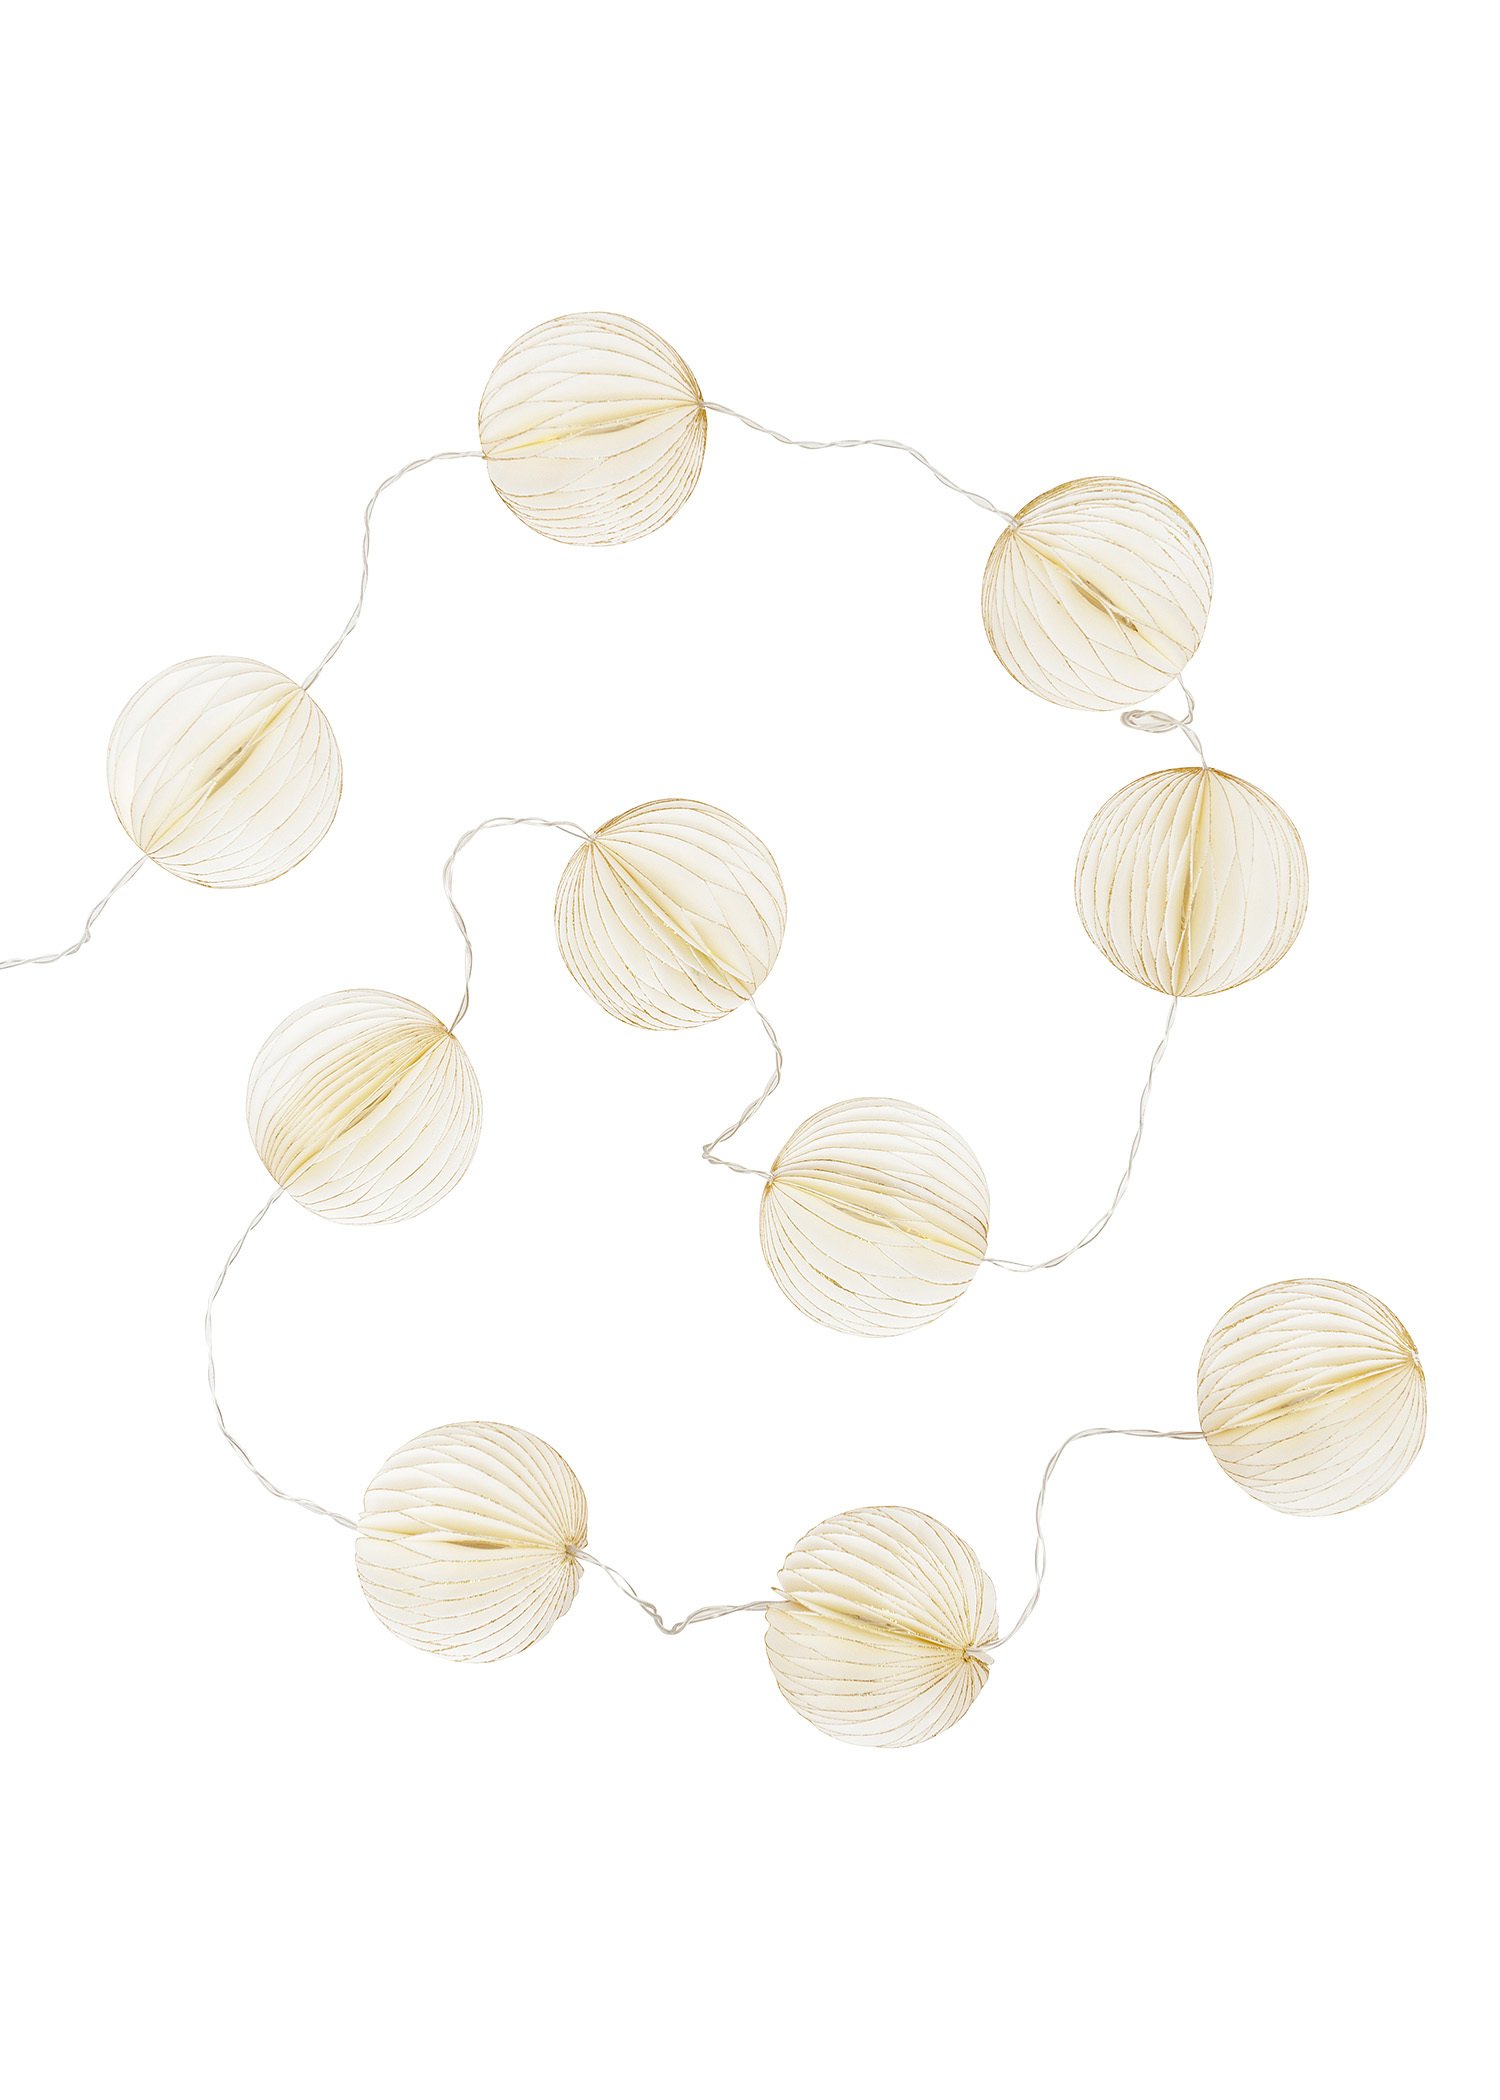 Paper ball light string